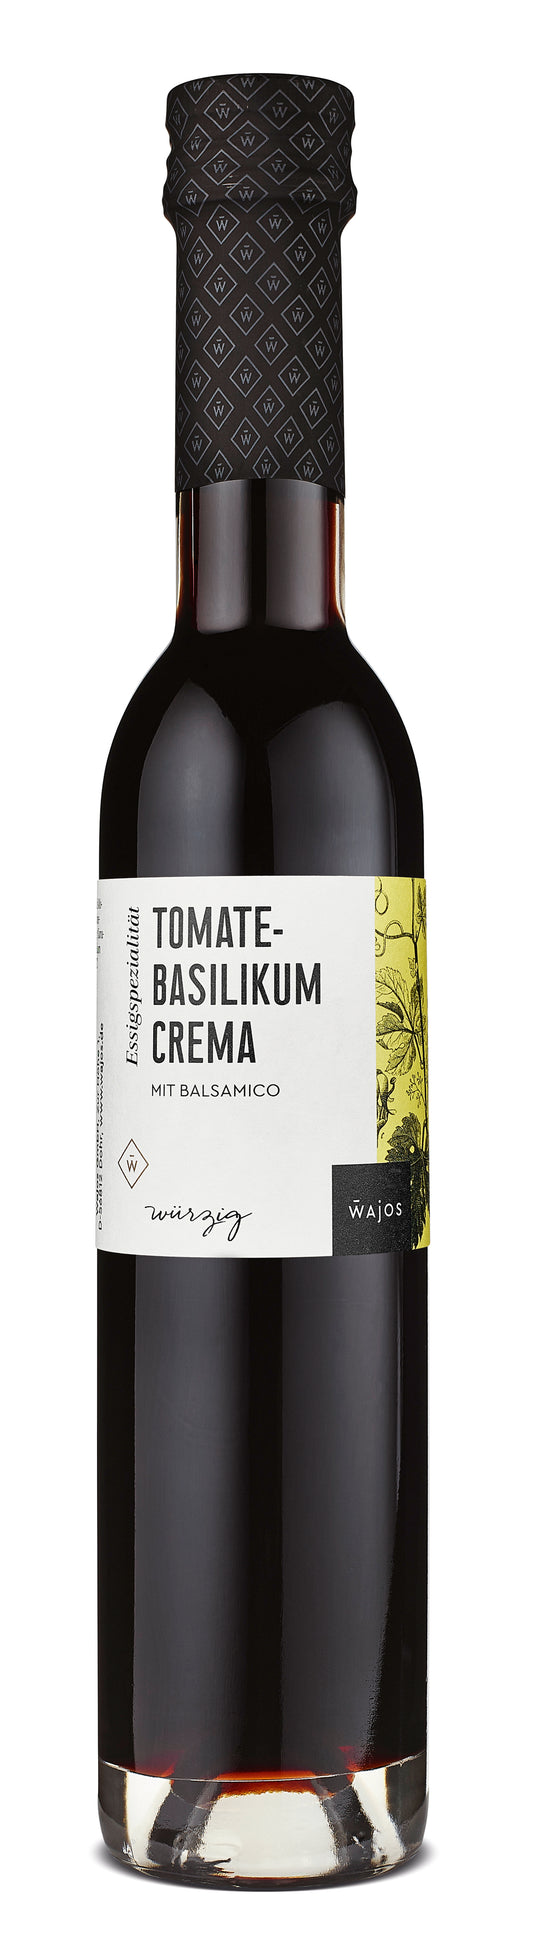 Tomate-Basilikum Crema